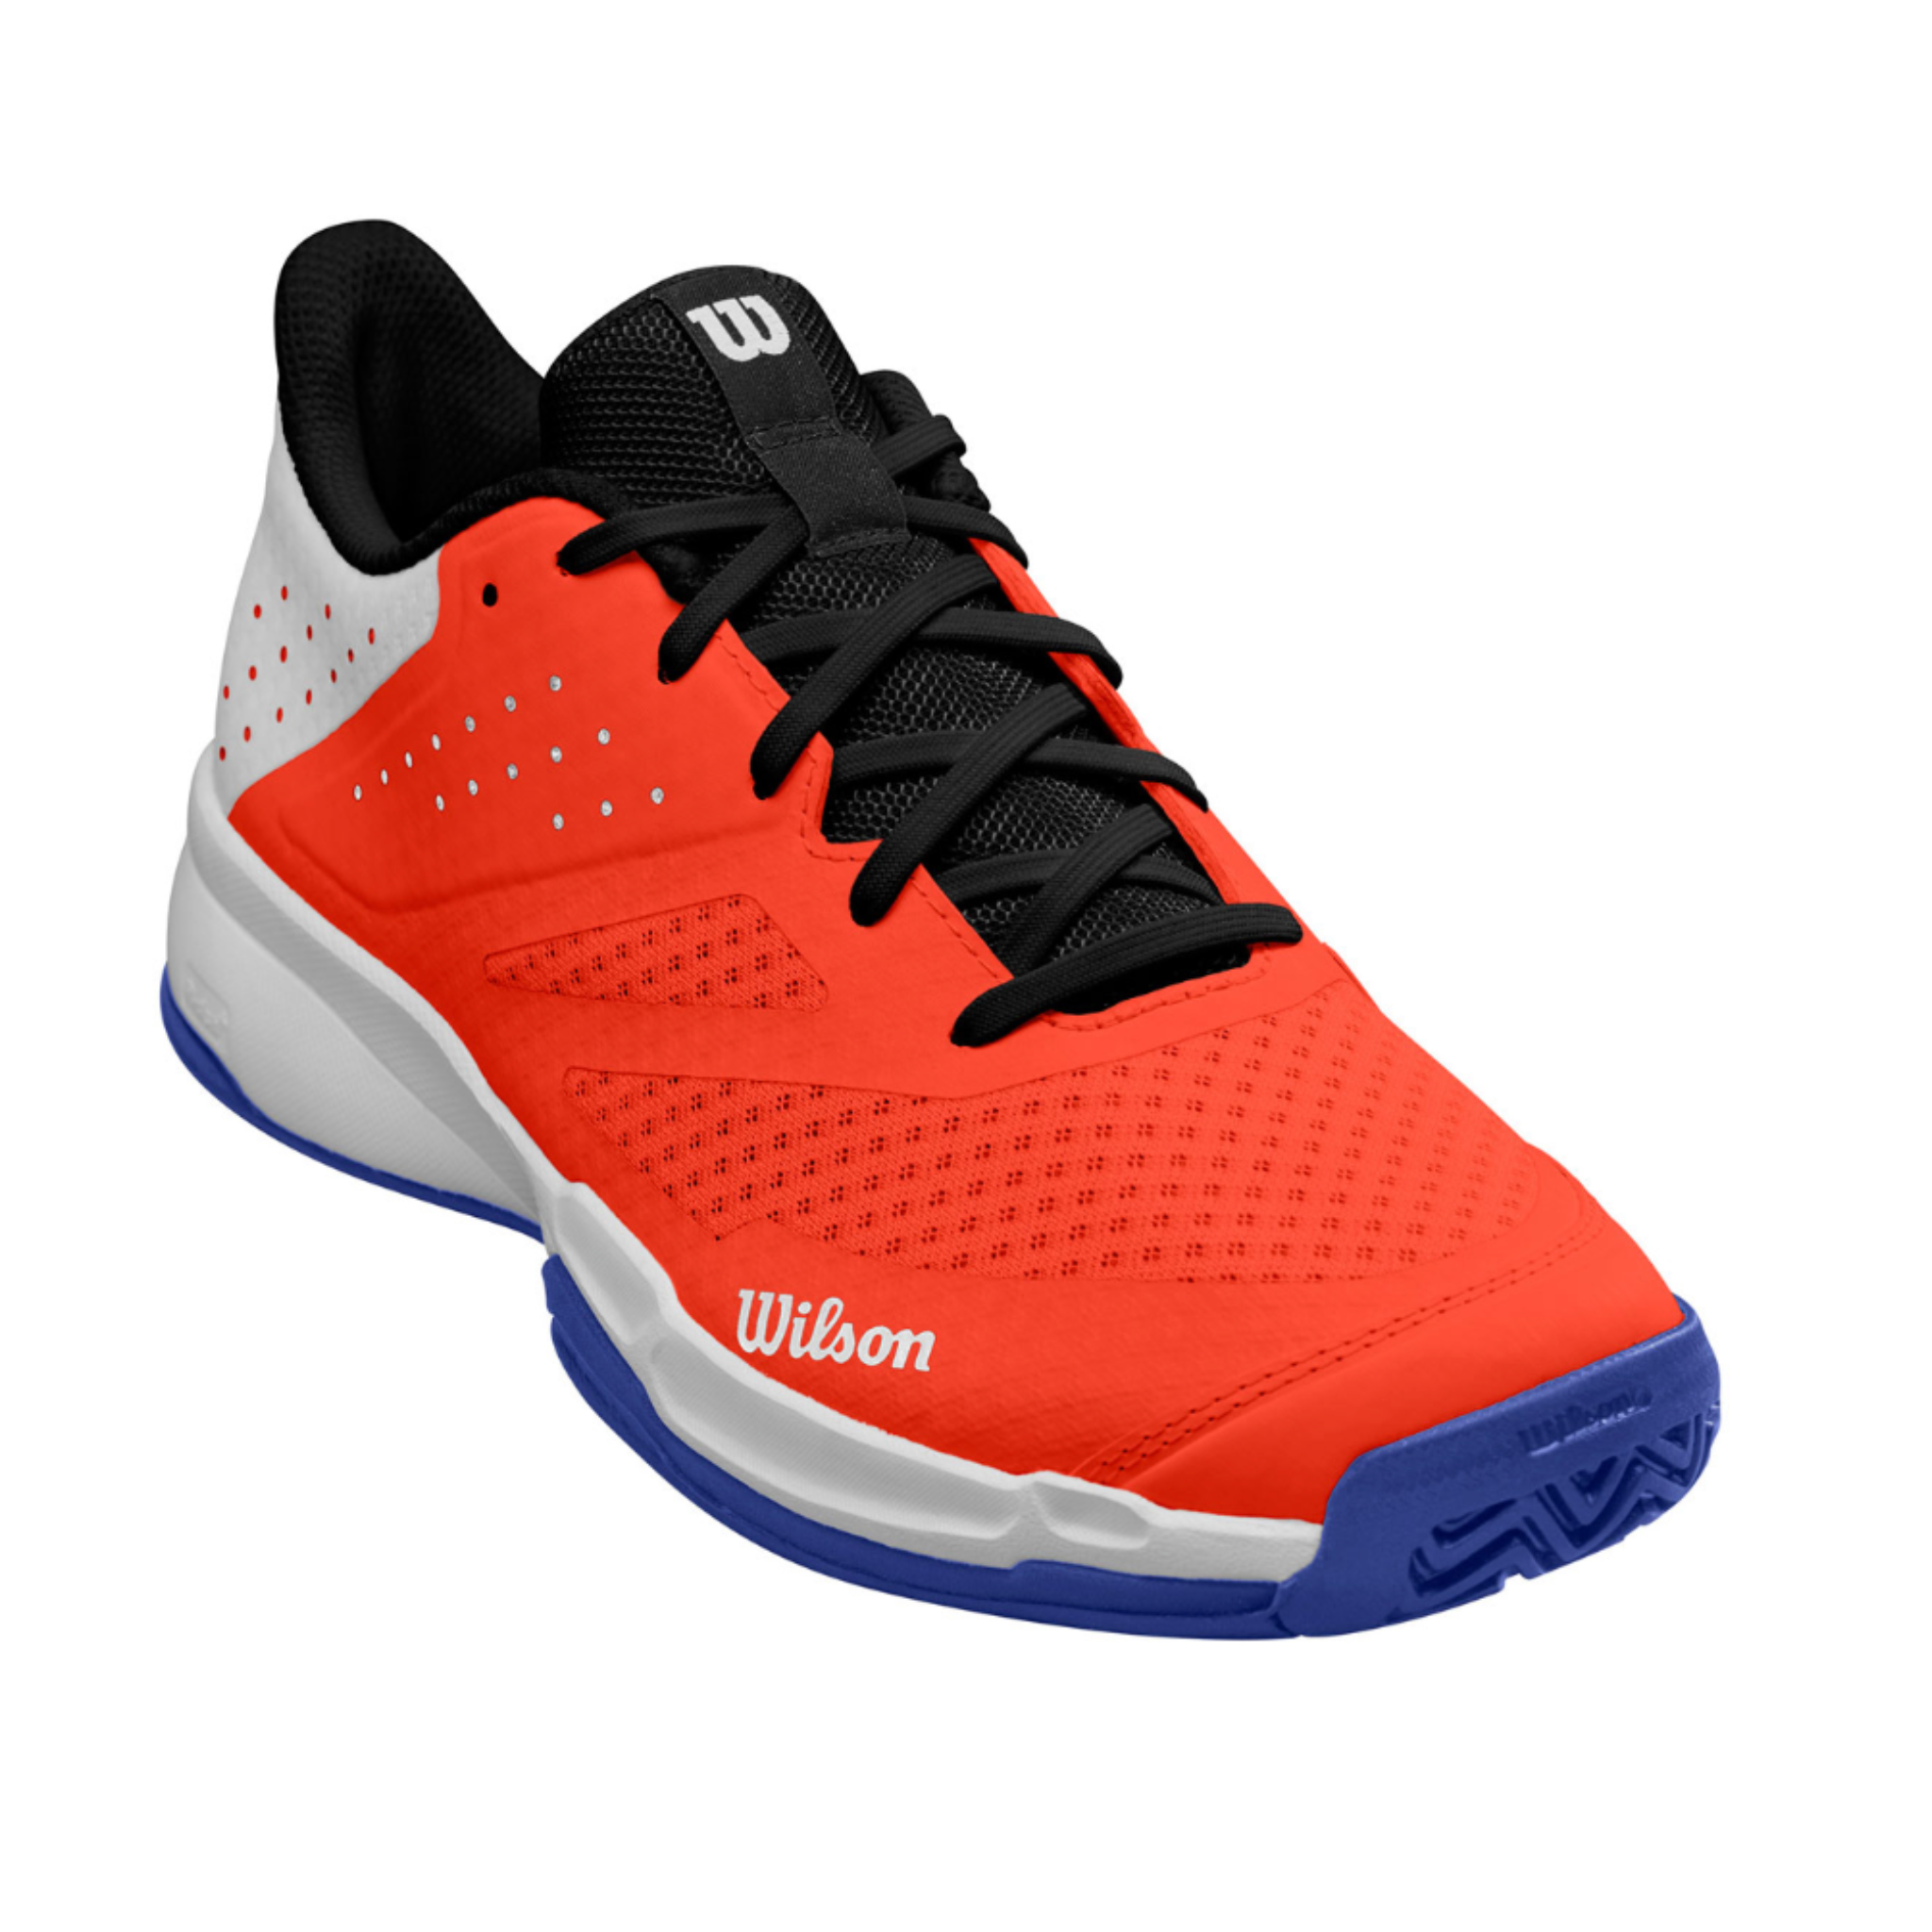 Wilson Kaos Stroke 2.0 Men's tennis shoes > White/Orange